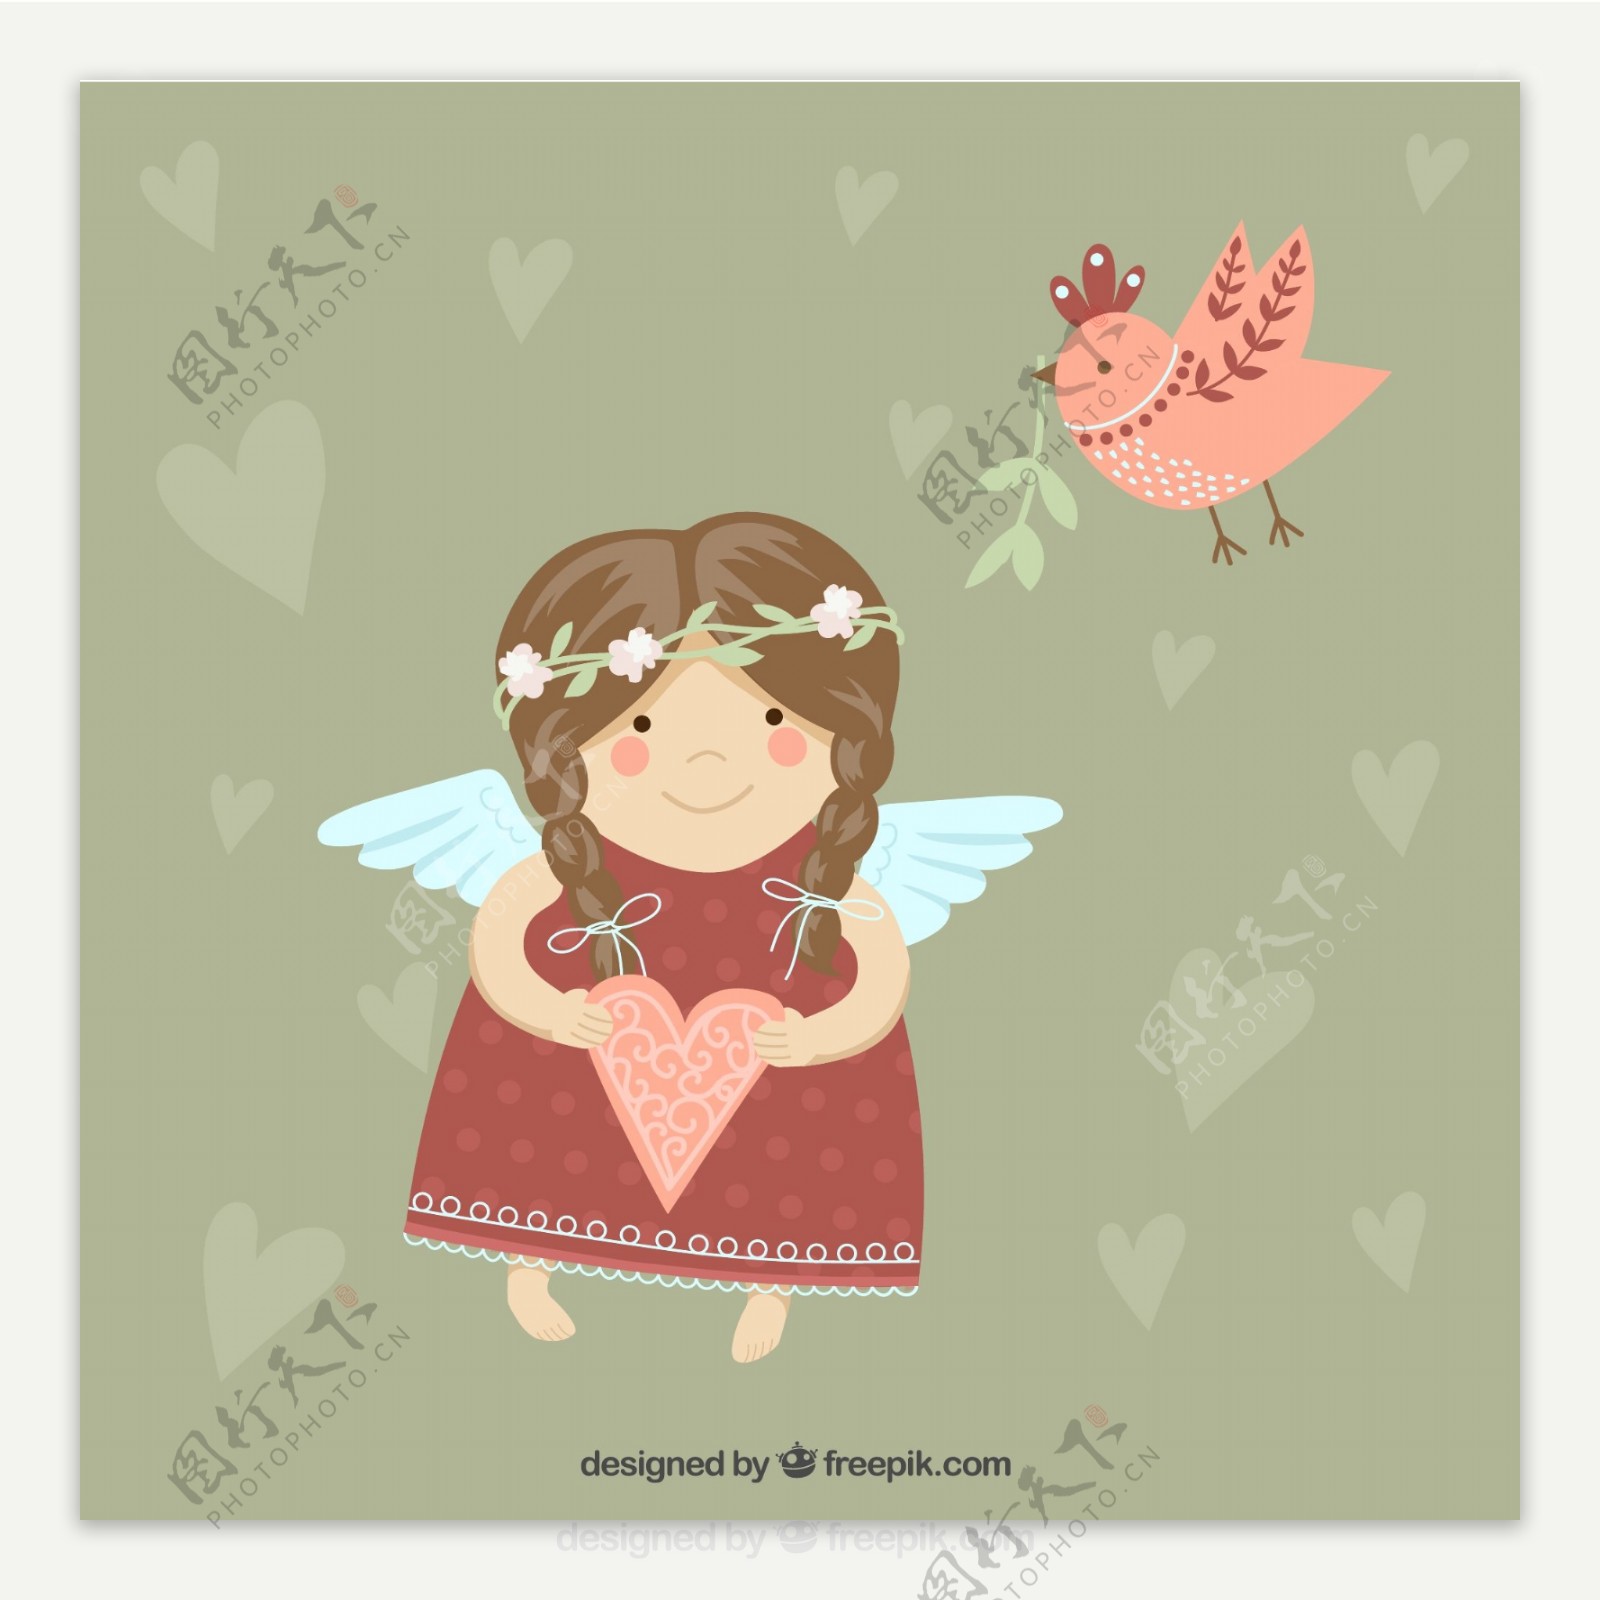 可爱天使女孩和小鸟矢量素材